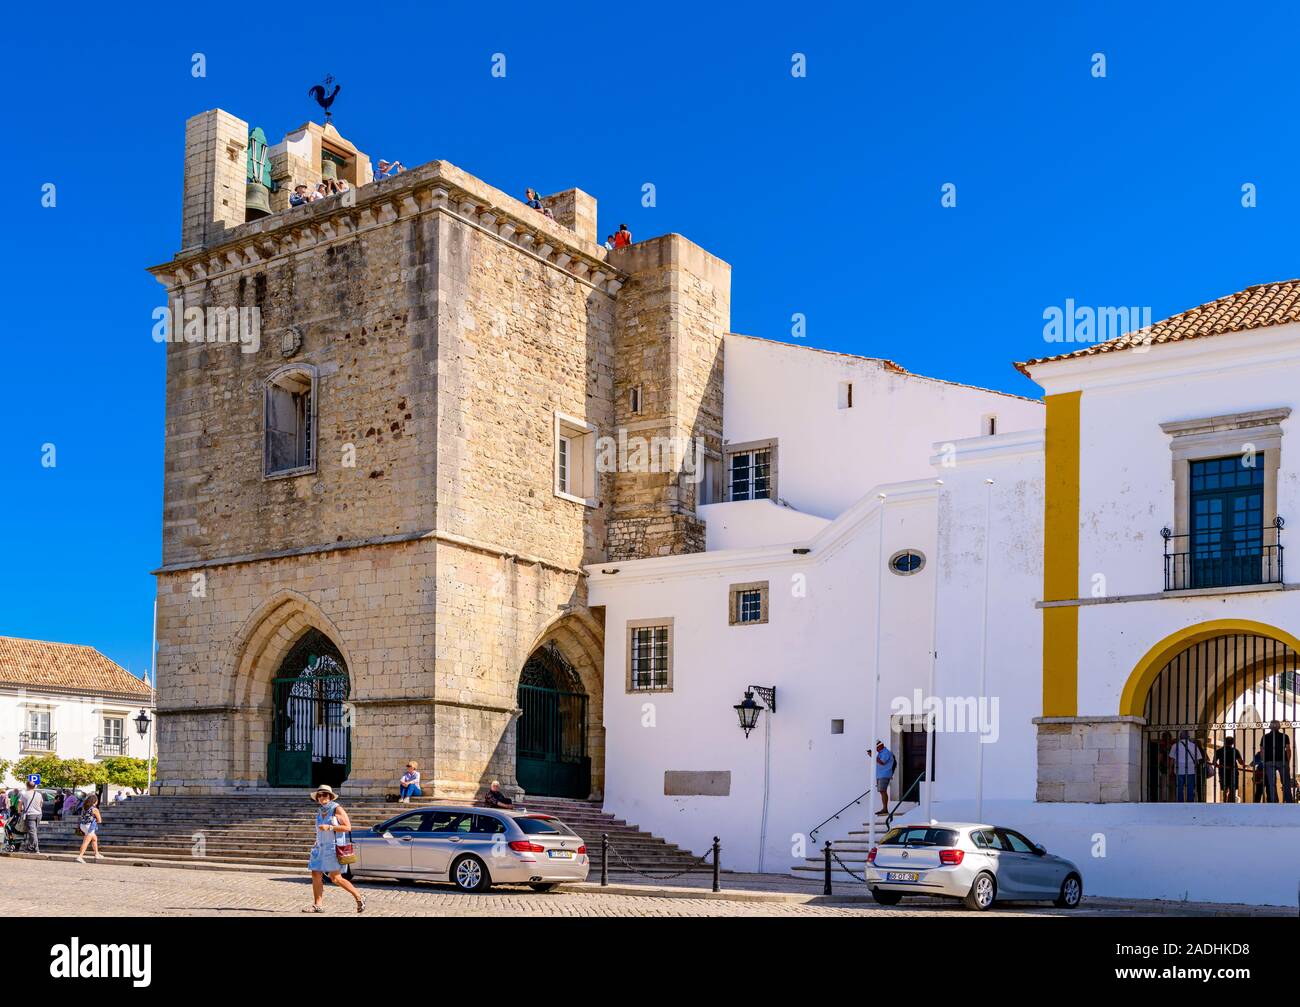 Clocher de la cathédrale de Faro, cathédrale Igreja de Santa Maria se. Faro, Algarve de l'est, Portugal. Banque D'Images